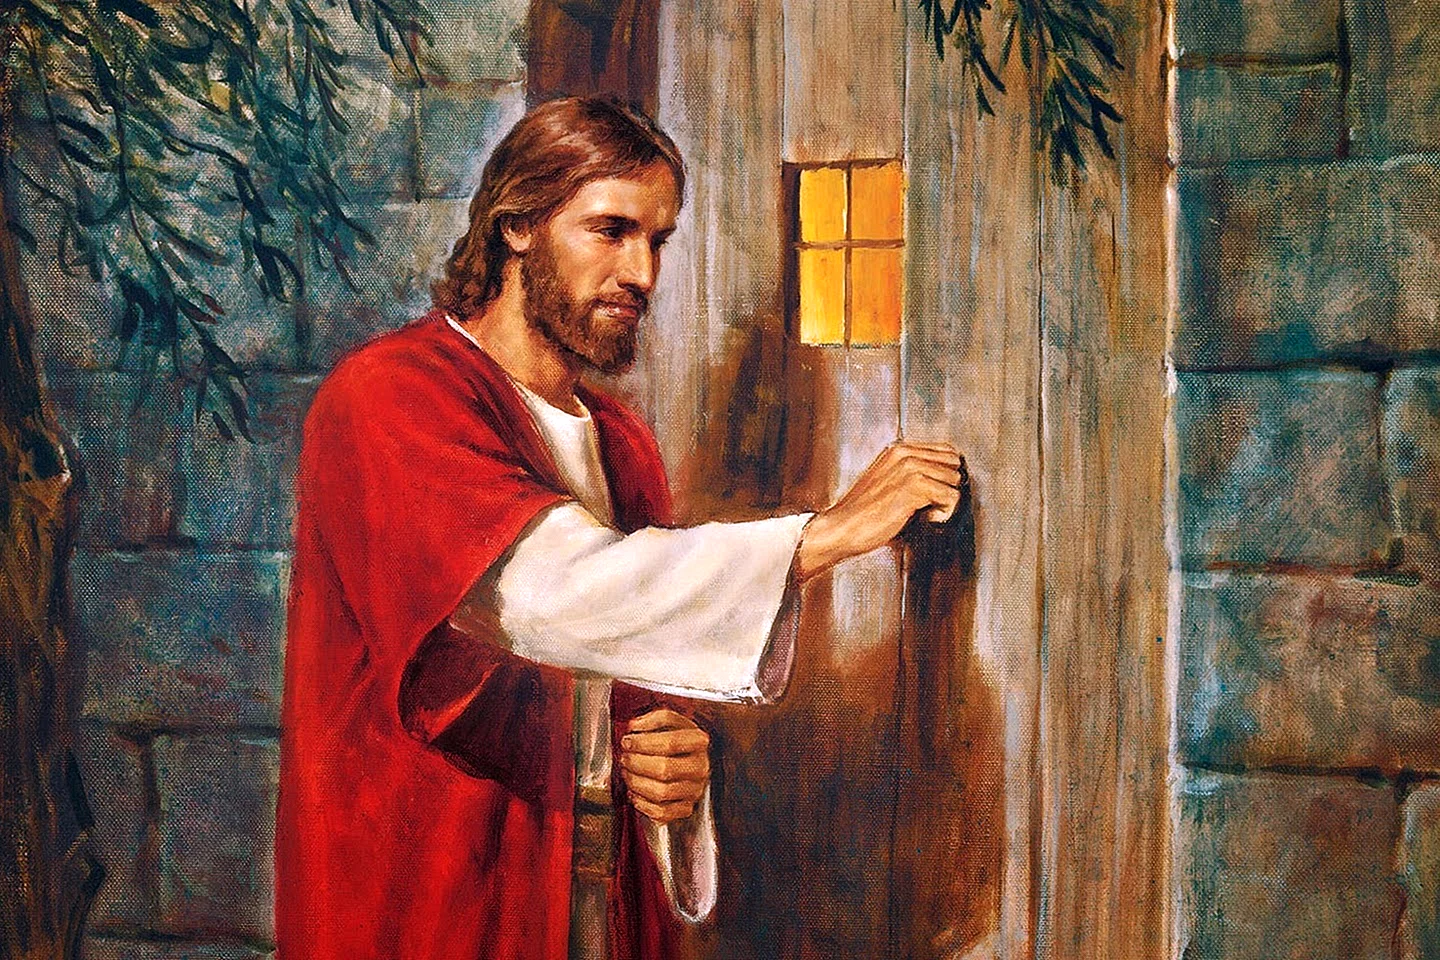 Jesus Wallpaper